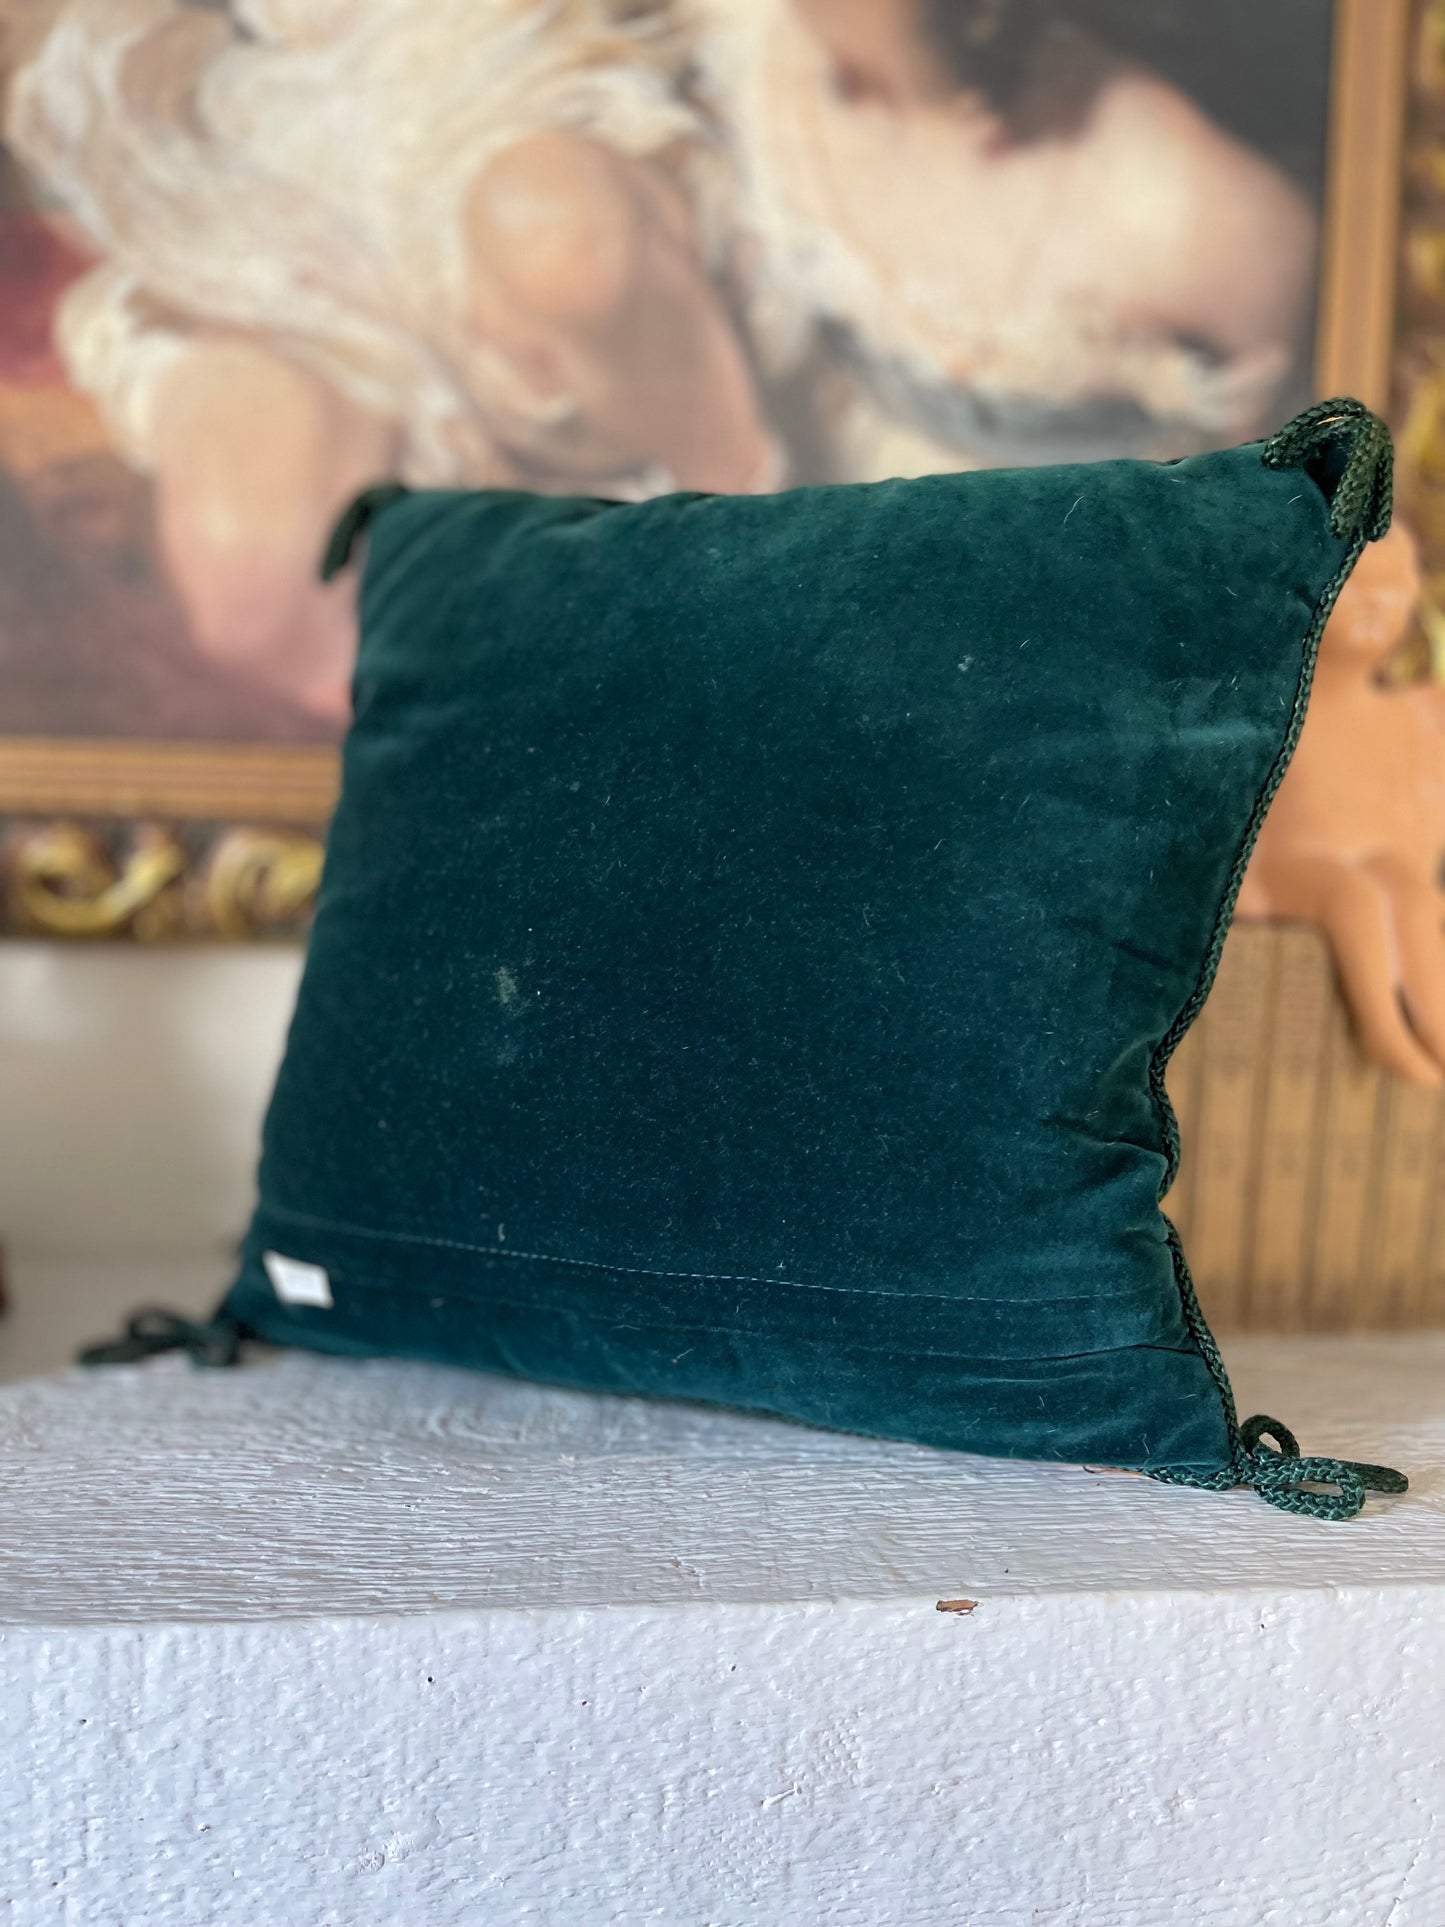 Needlepoint dog velvet pillow